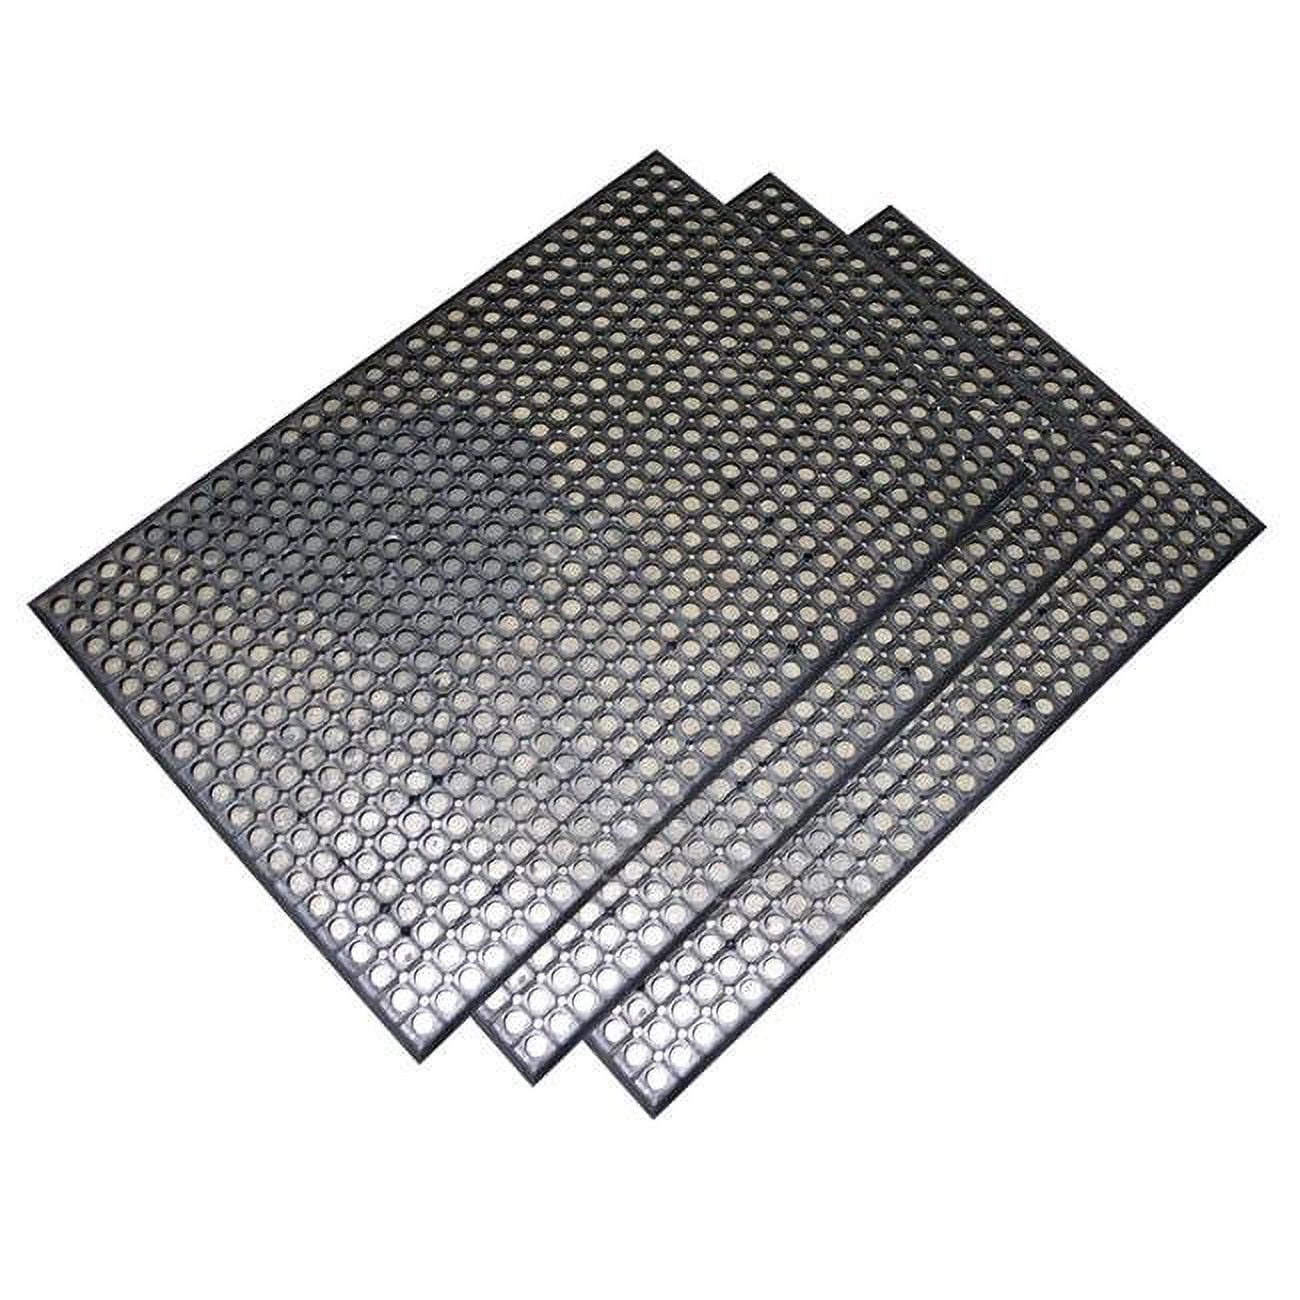 2 X 3 Ft. Industrial Rubber Floor Mat, Set Of 3